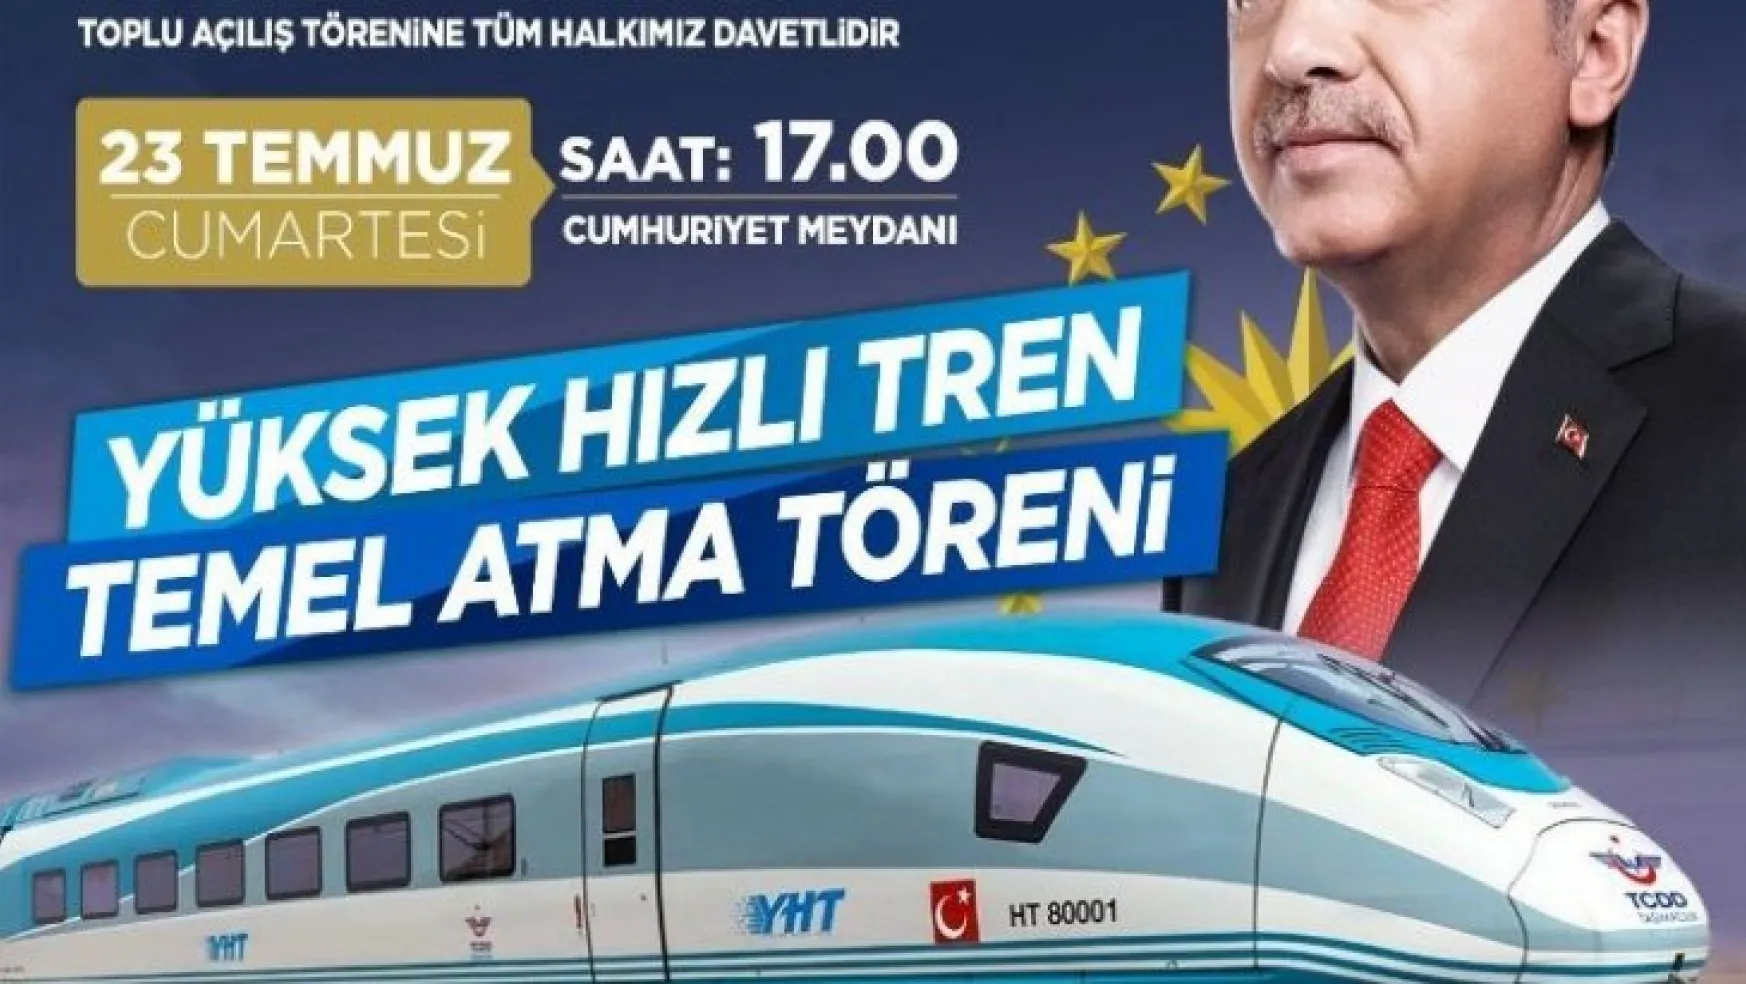 Yüksek hızlı trenin temelini Cumhurbaşkanı Erdoğan atacak